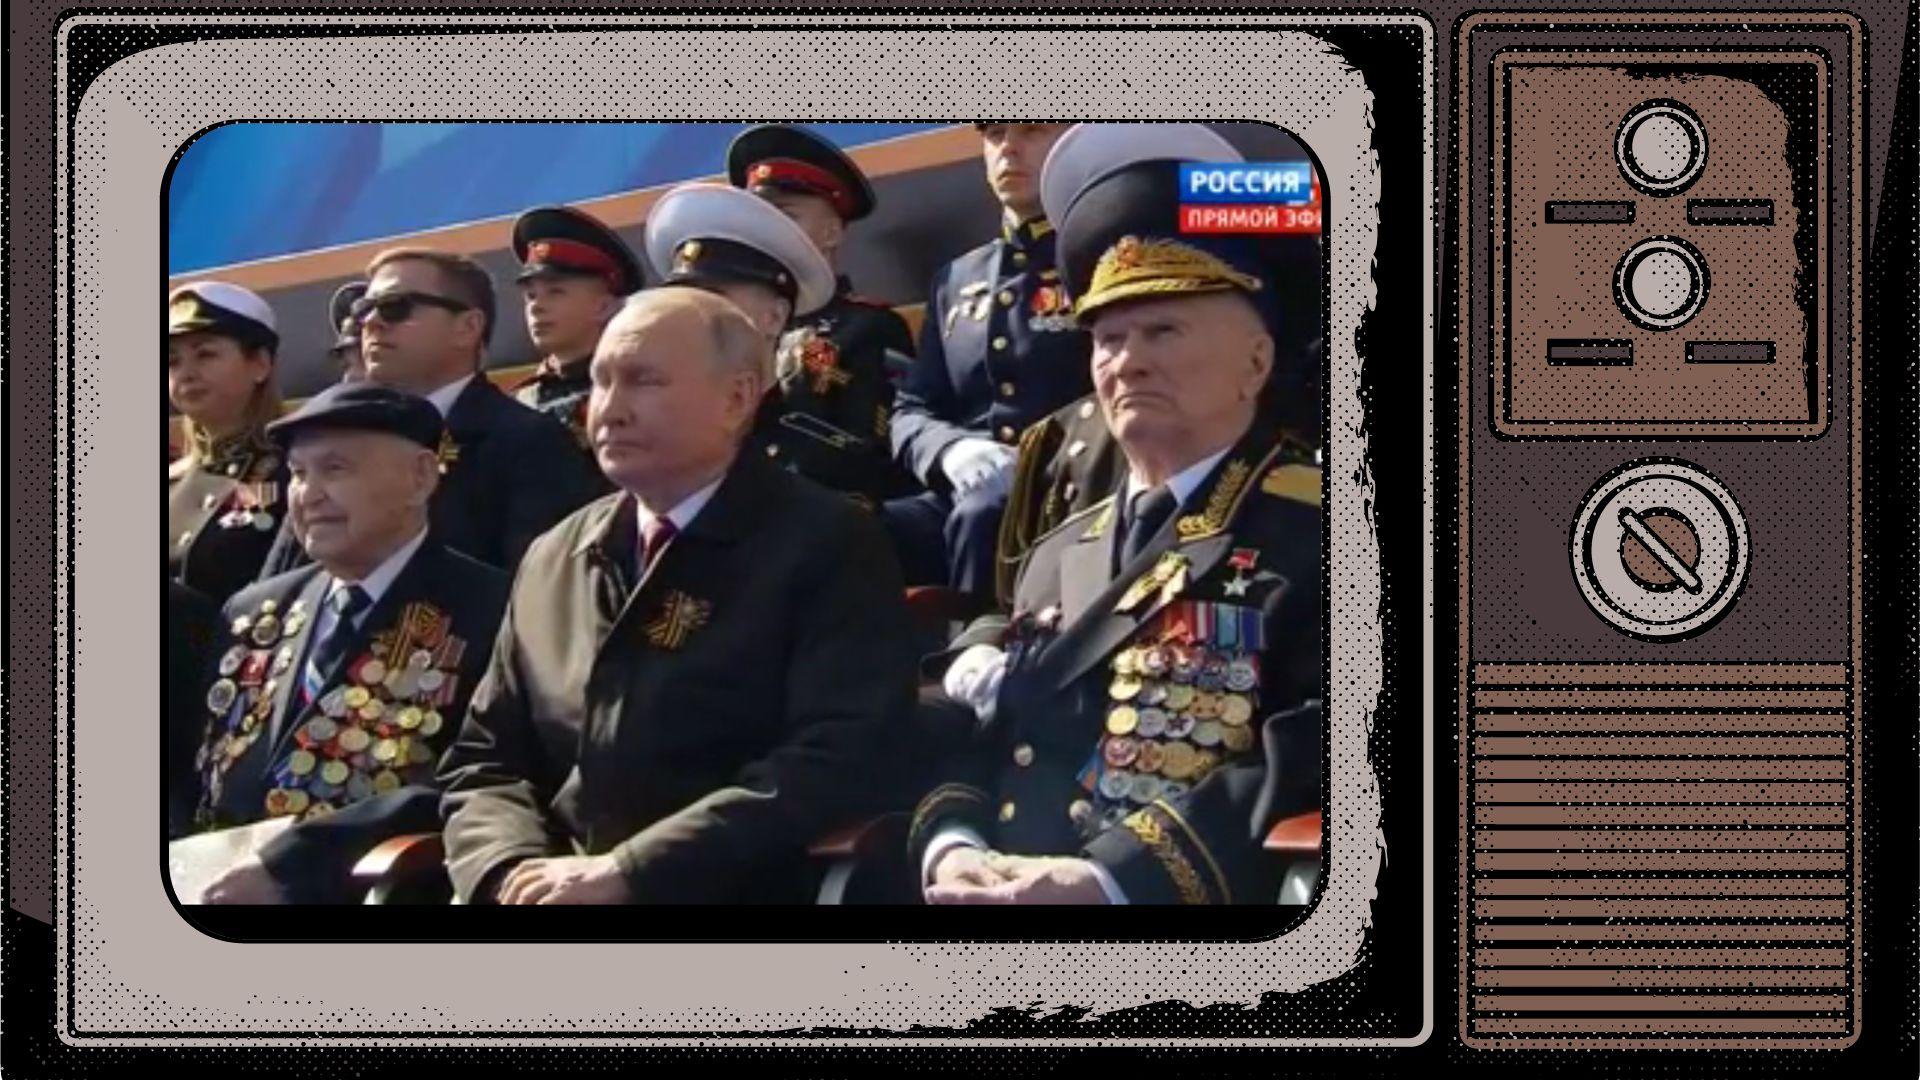 Grafika: zdjecie Putina w otoczeniu weteranów z medalami w ramce starego telewizora